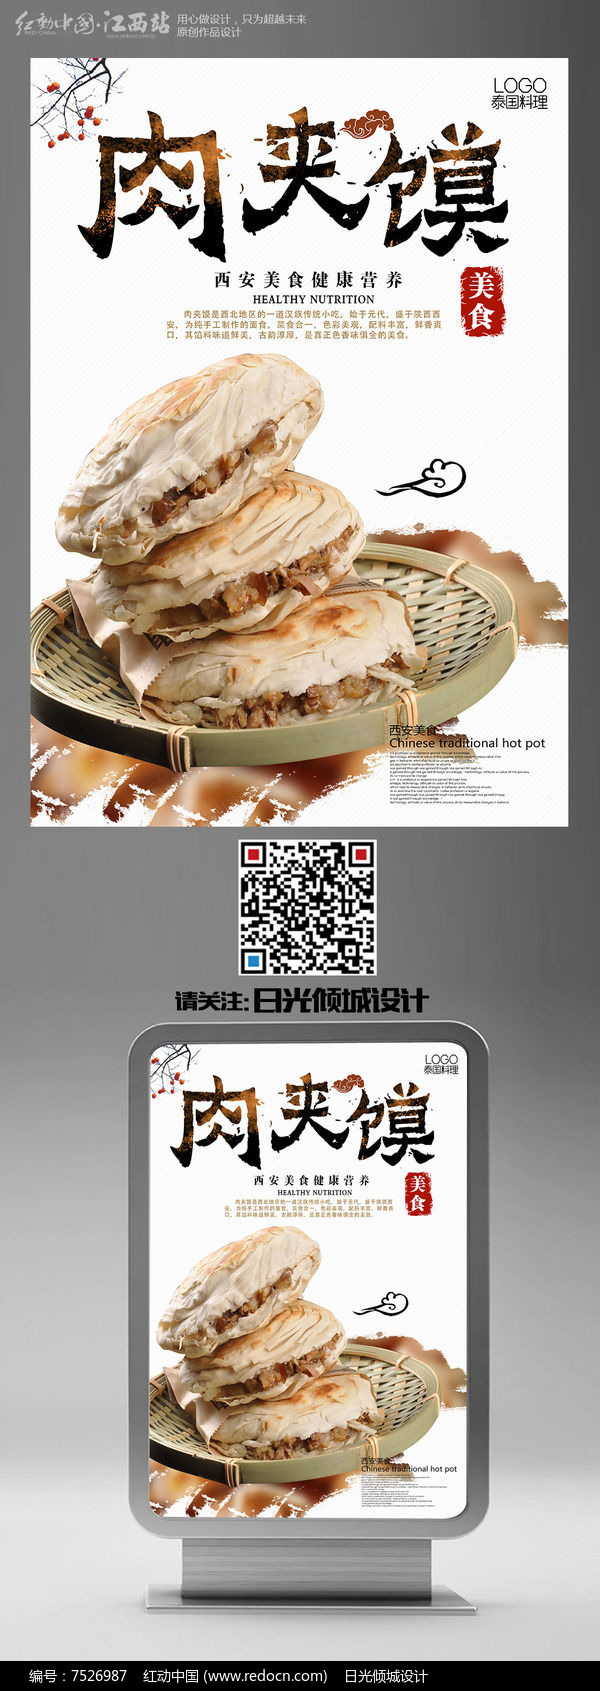 传统美味肉夹馍宣传海报图片